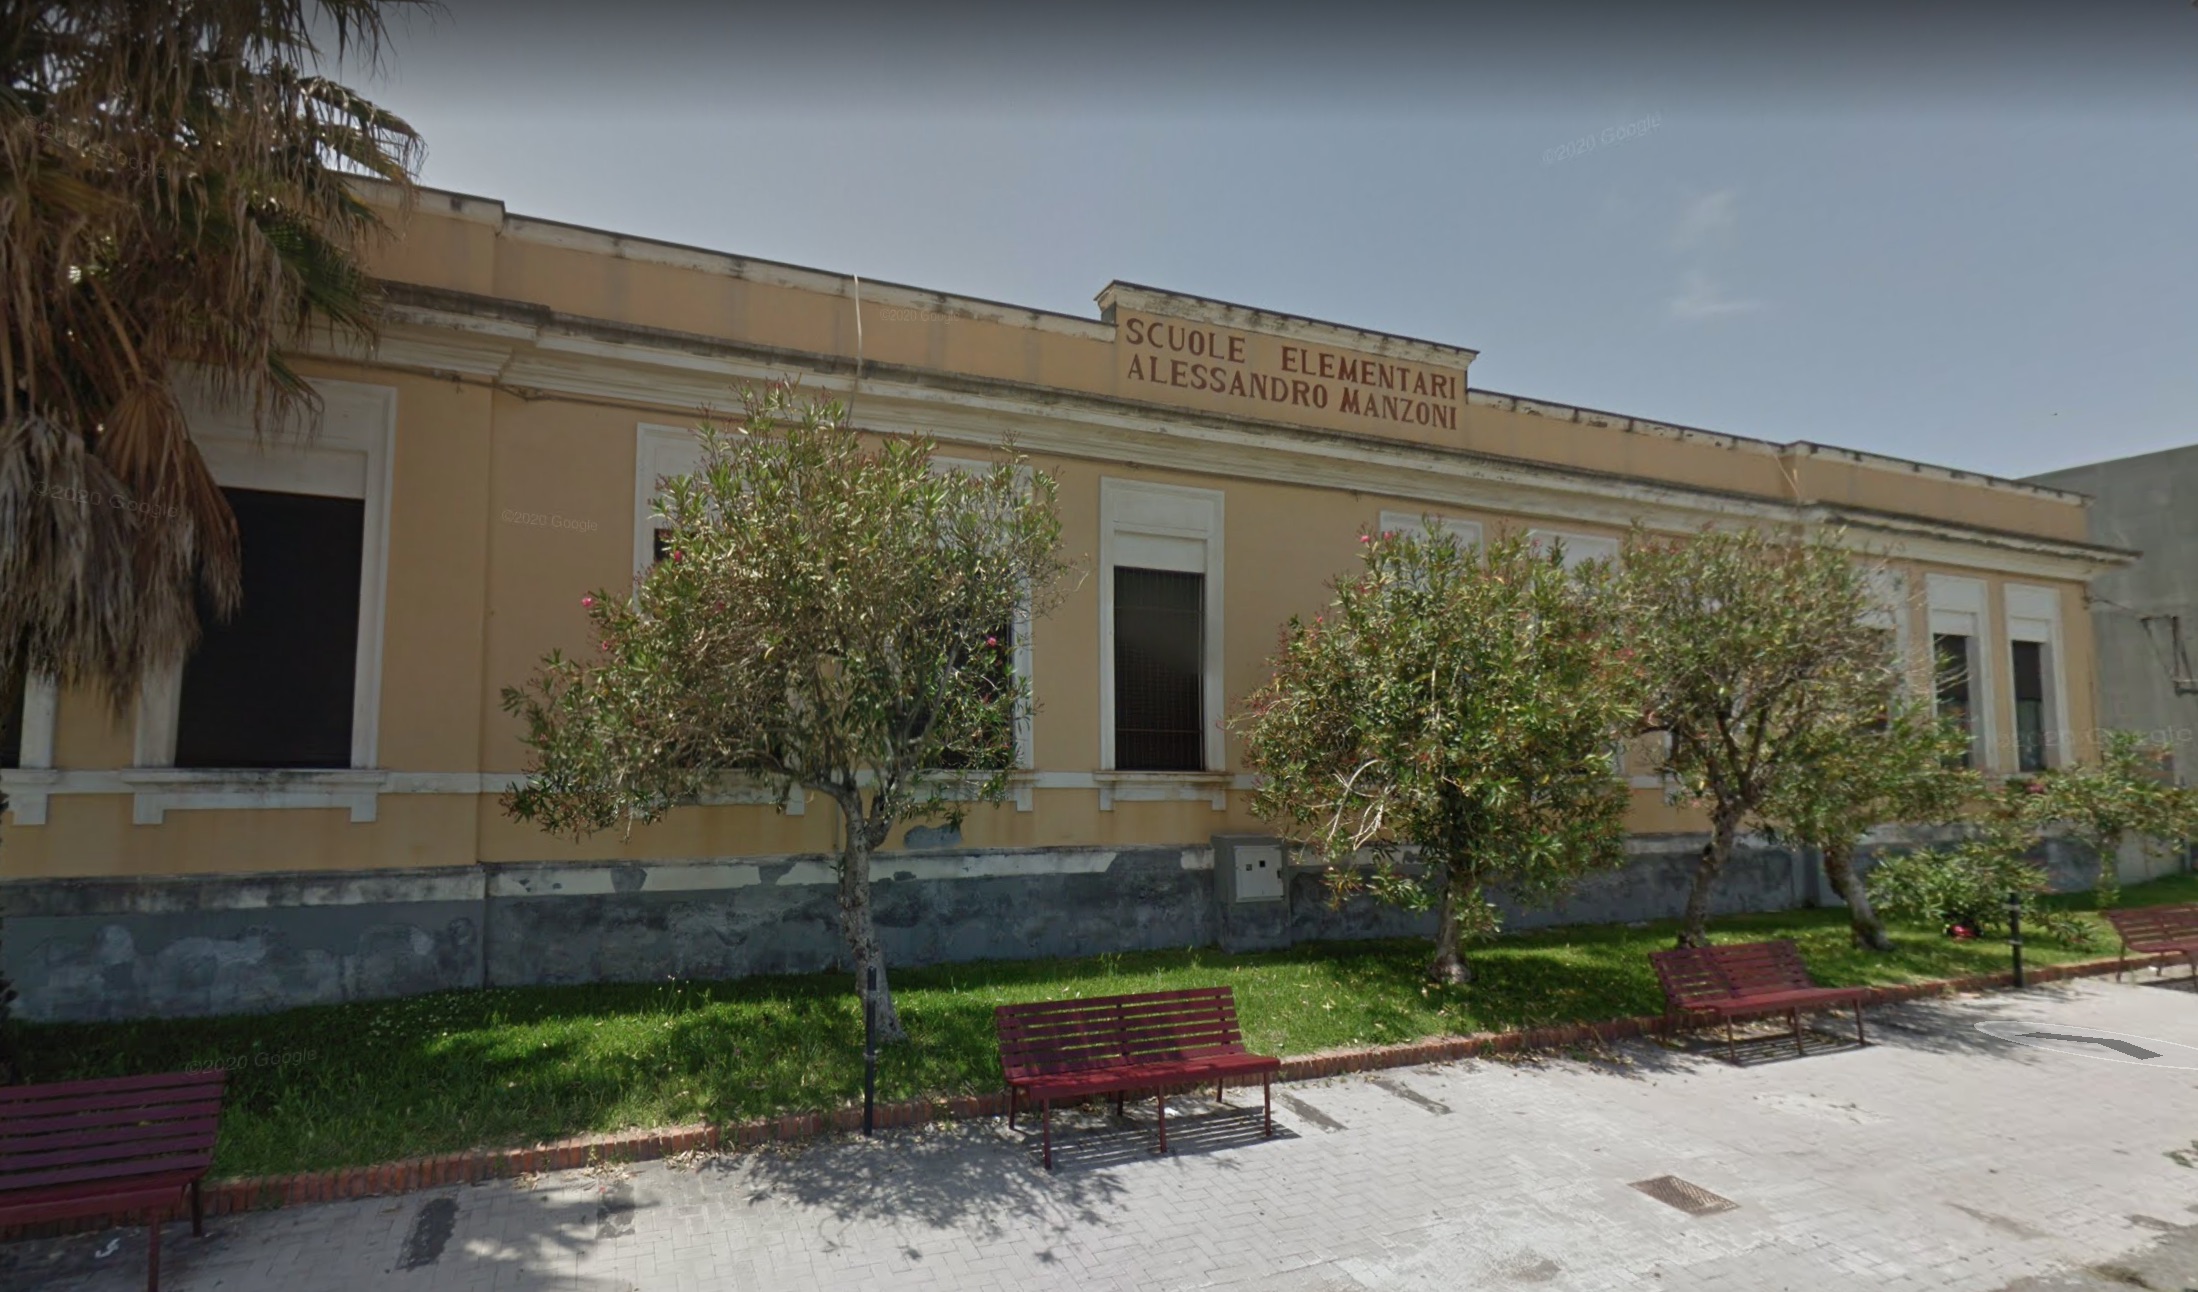 Coronavirus Catania, maestra positiva a Riposto: chiuso il plesso scolastico Manzoni di Torre Archirafi